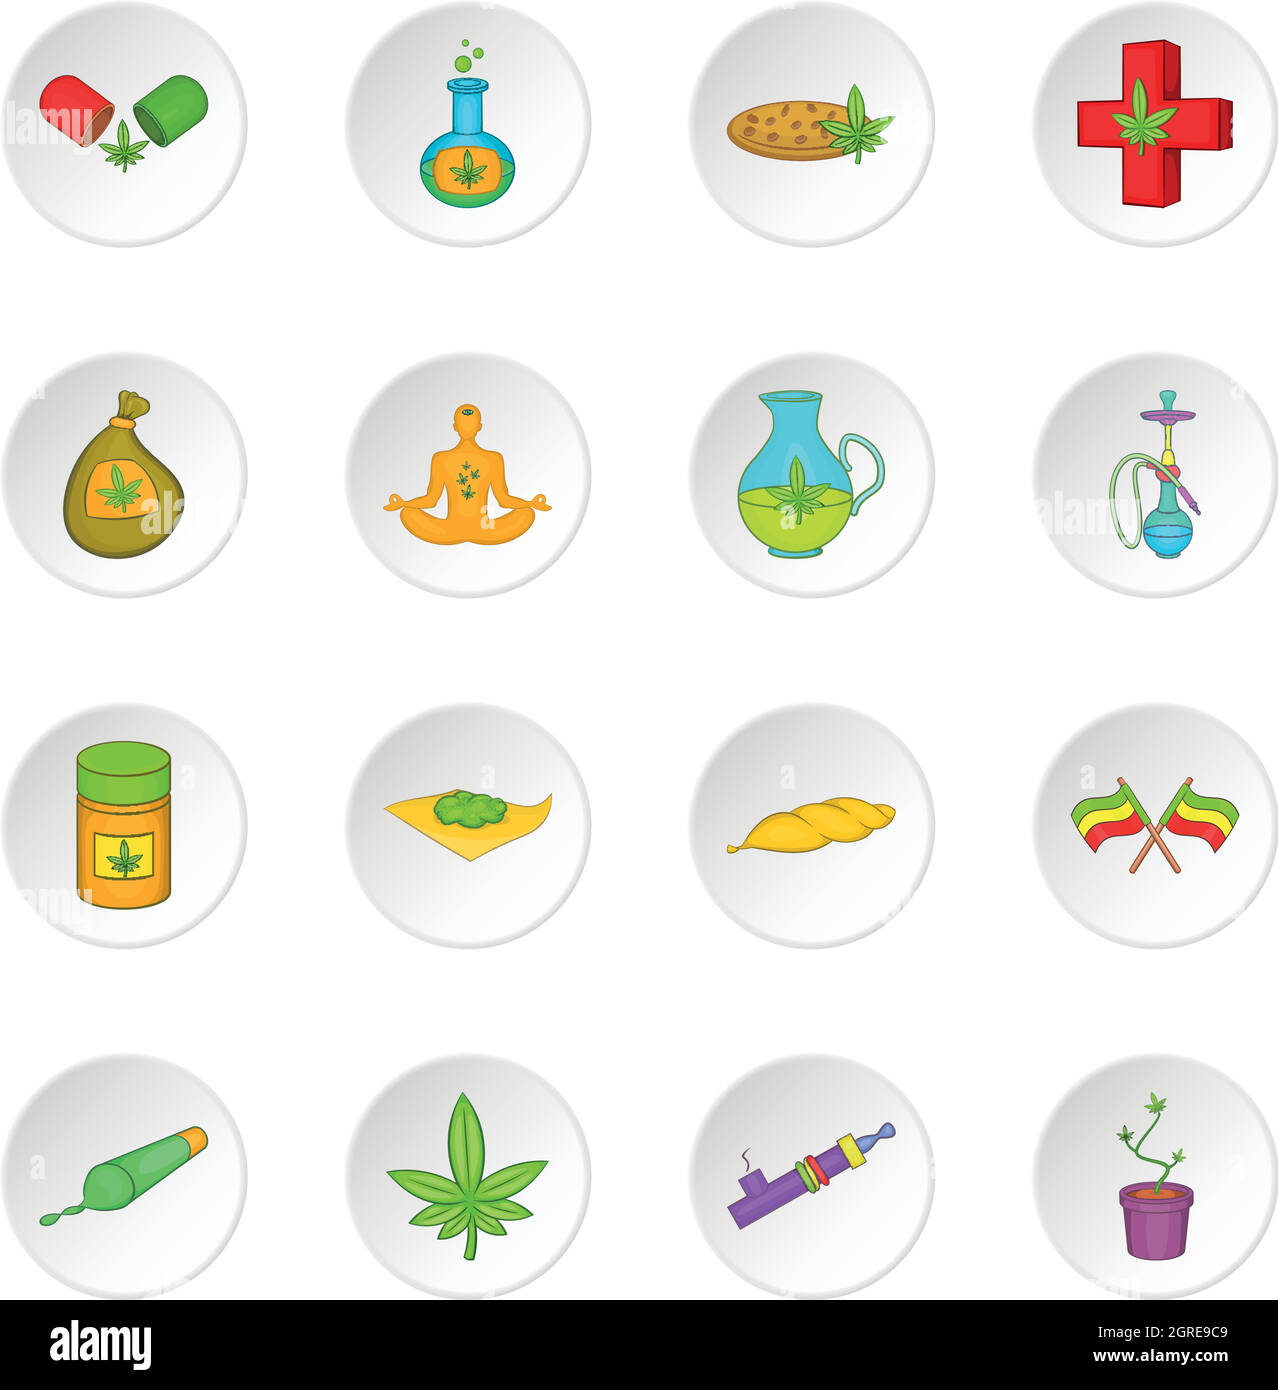 Marijuana icons set, cartoon style Stock Vector